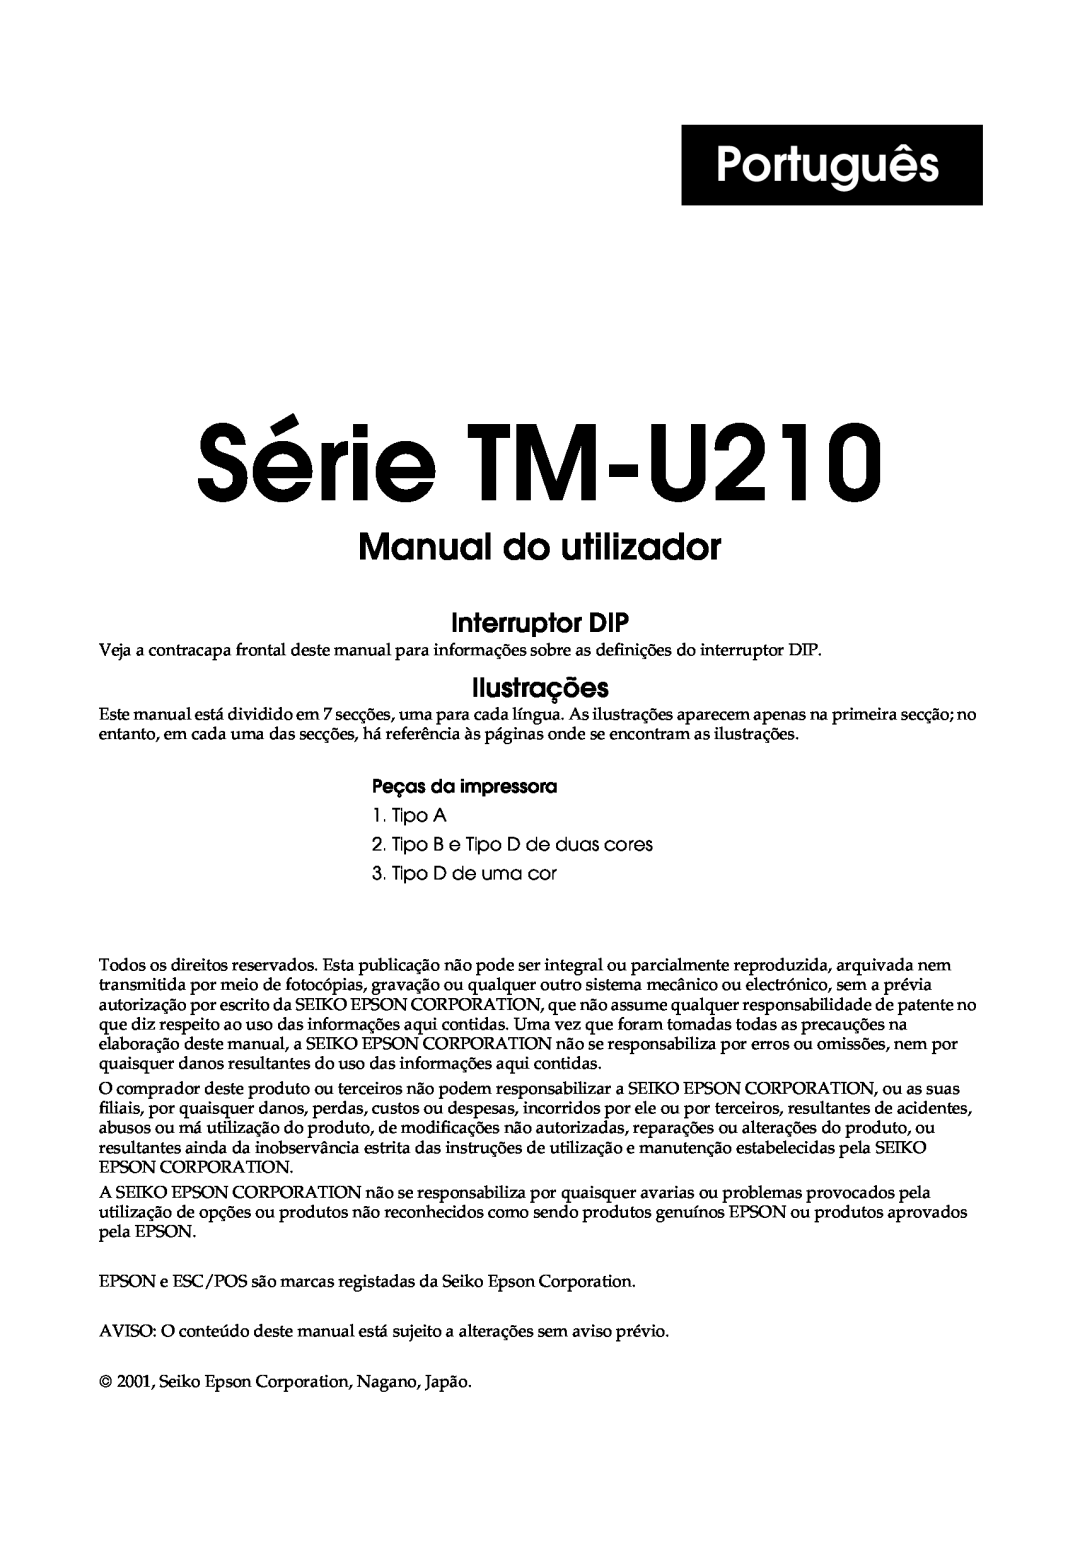 Epson TM-U210 Series, M119B, M119D Português, Série TM-U210 Manual do utilizador, Interruptor DIP, Ilustrações 